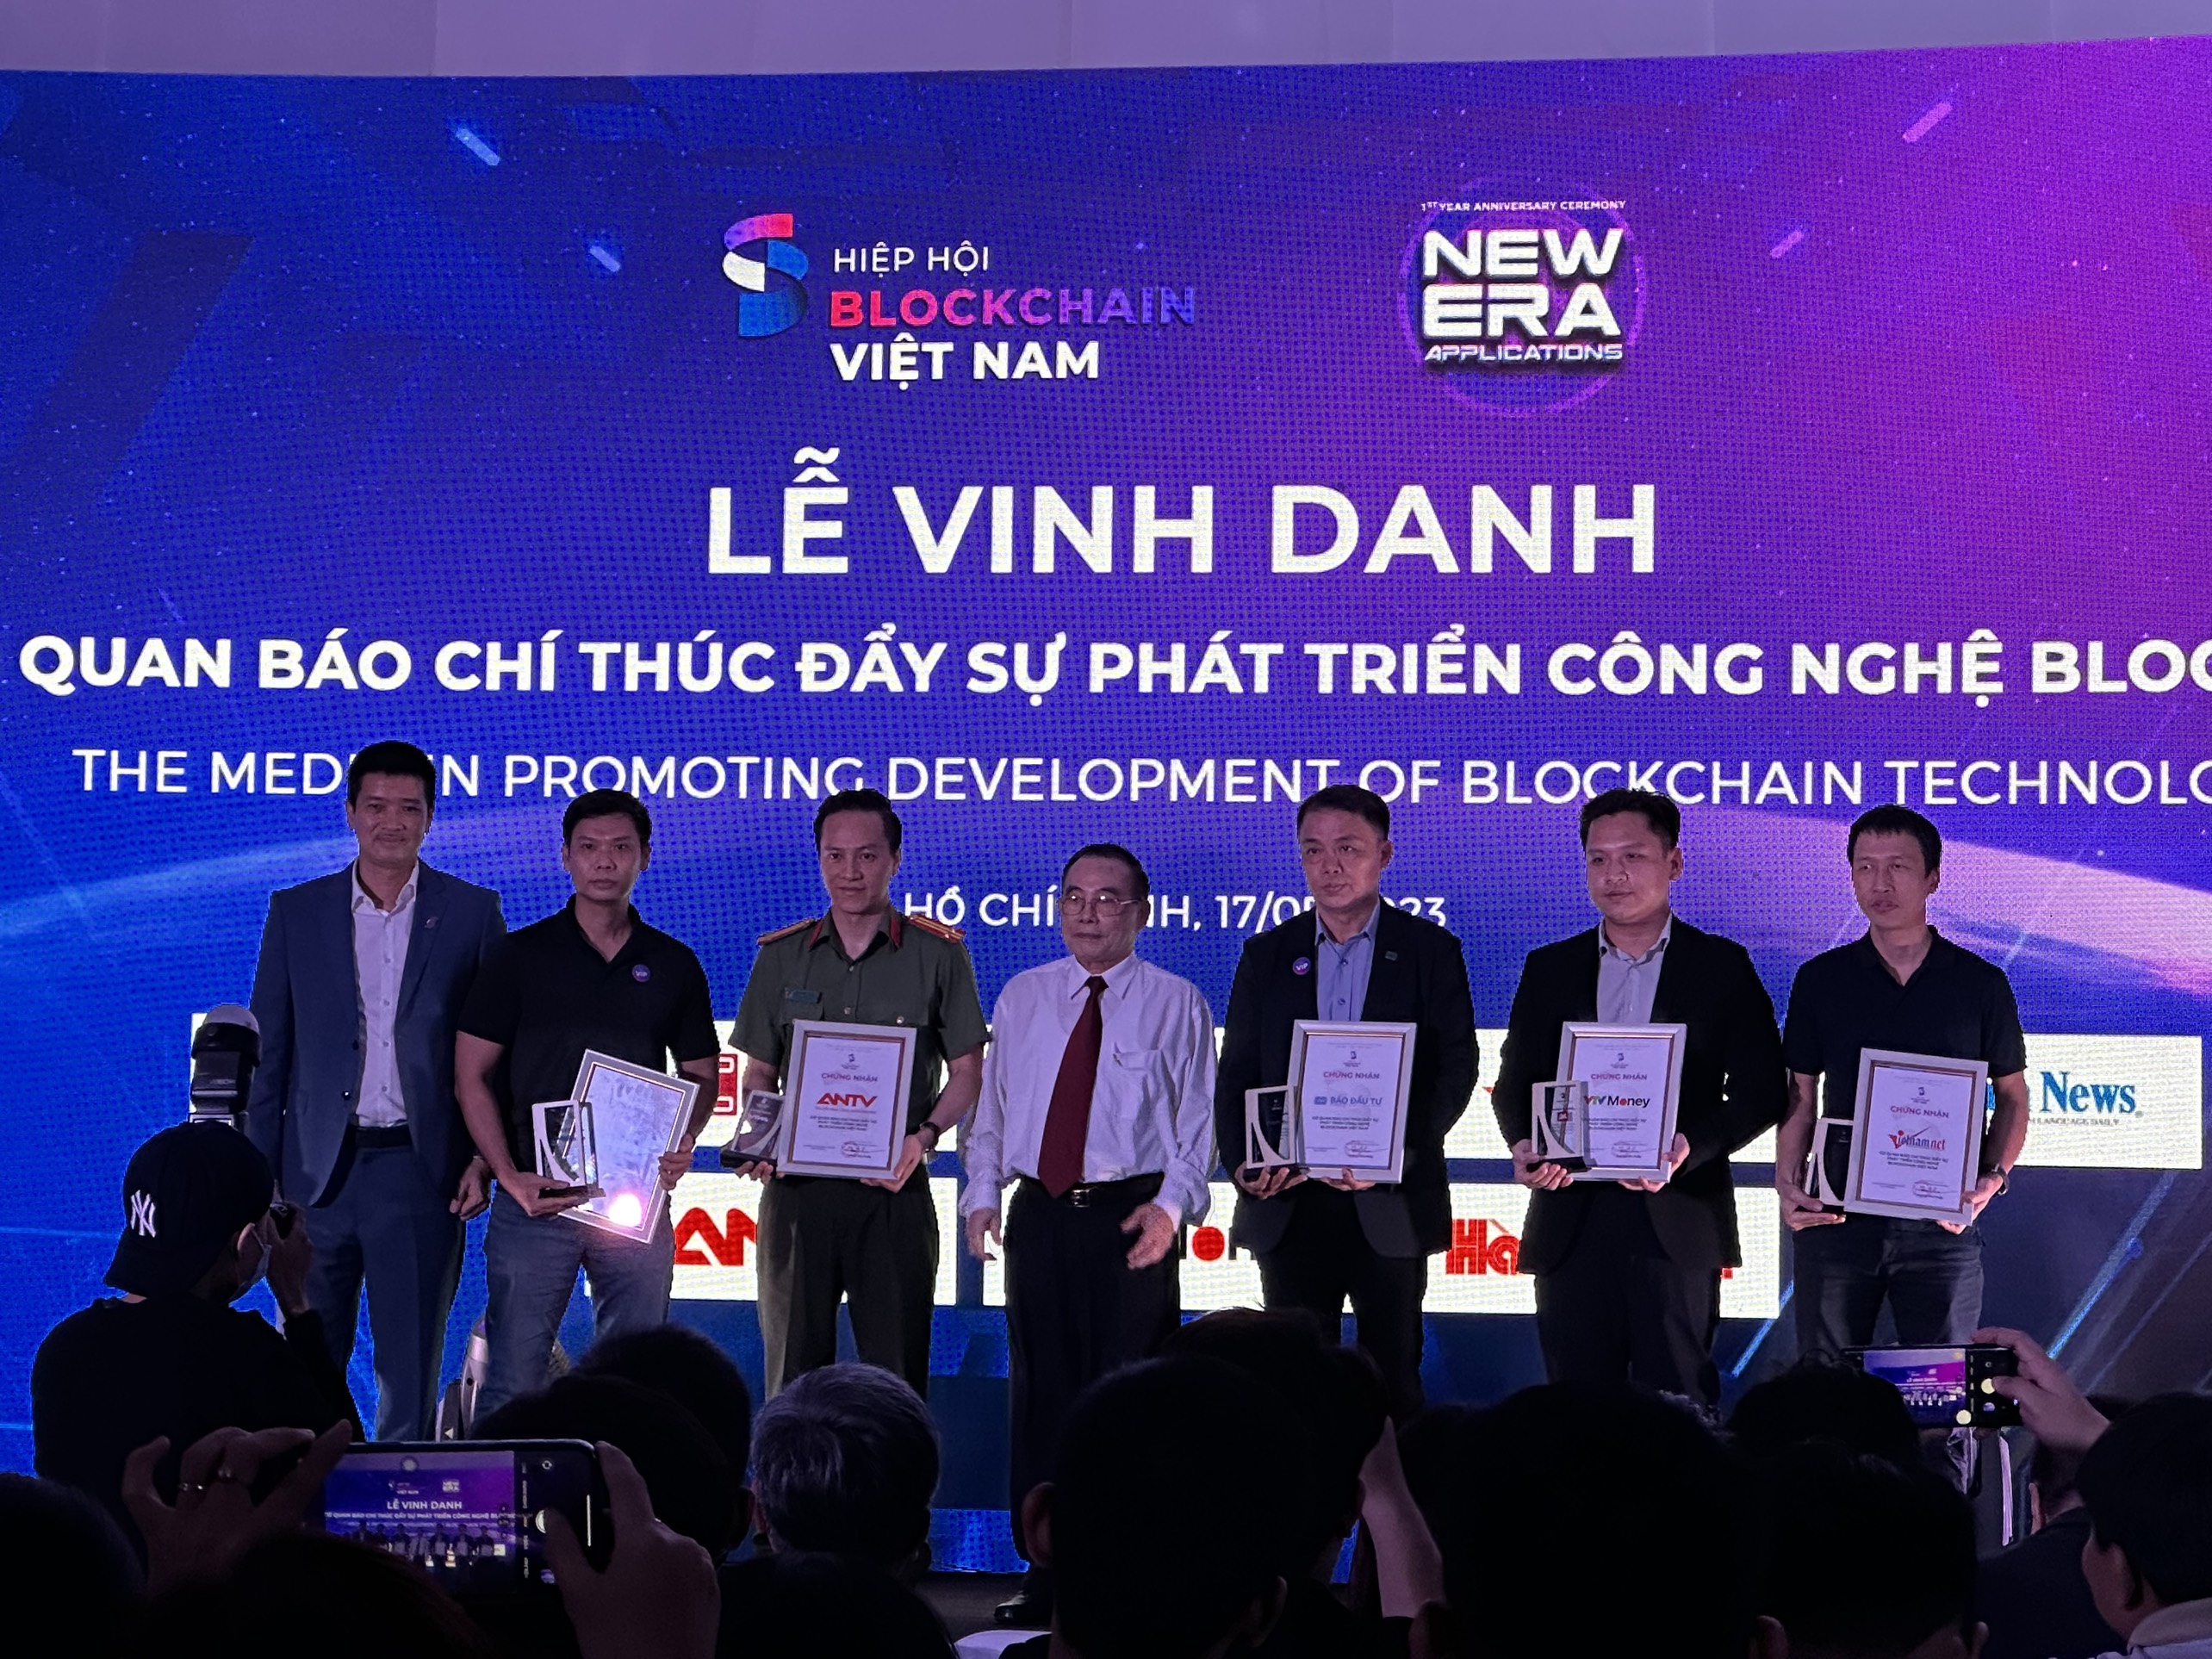 Hiệp hội Blockchain Việt Nam vinh danh báo Đầu tư cùng 6 cơ quan báo chí khác vì những đóng góp tích cực trong lĩnh vực này.